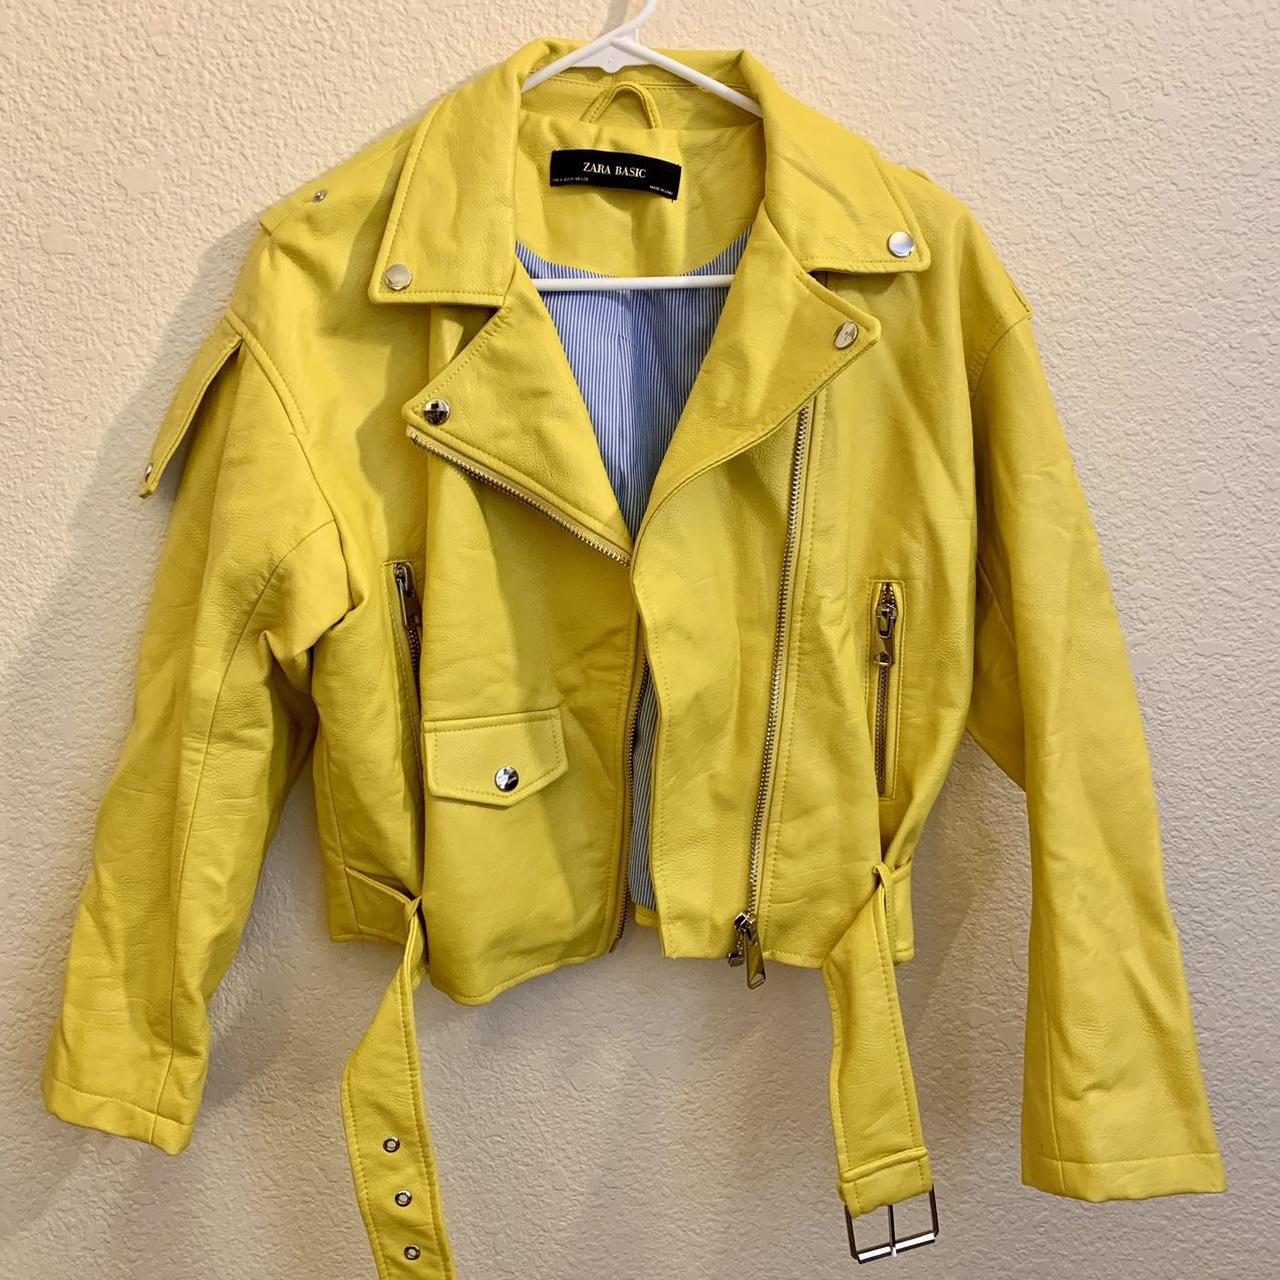 Zara Yellow Faux Leather Jacket - Depop